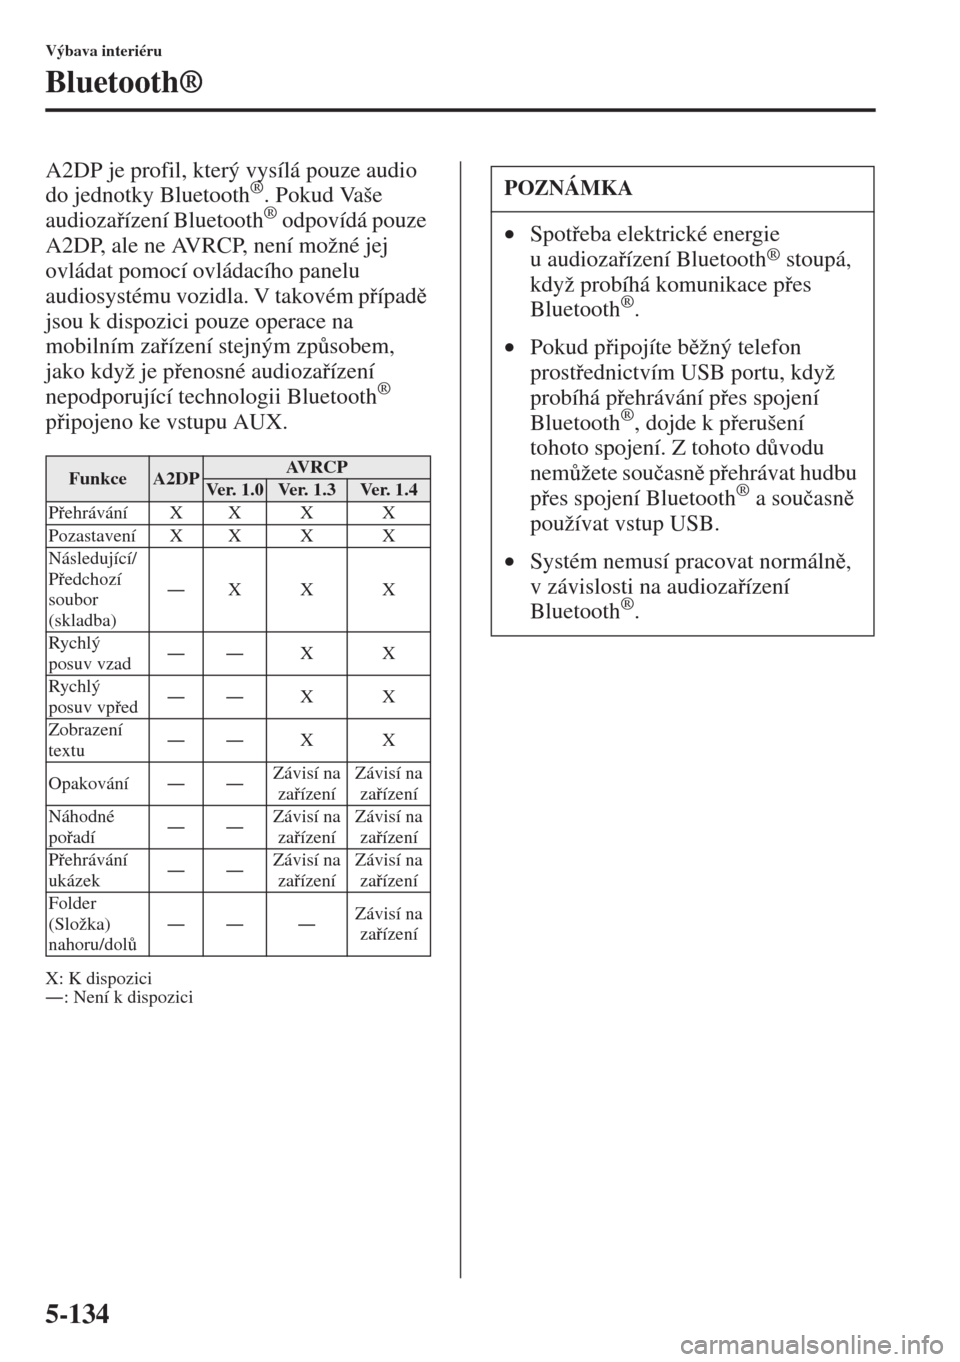 MAZDA MODEL CX-5 2015  Návod k obsluze (in Czech) 5-134
Výbava interiéru
Bluetooth®
A2DP je profil, který vysílá pouze audio 
do jednotky Bluetooth®. Pokud Vaše 
audiozaízení Bluetooth® odpovídá pouze 
A2DP, ale ne AVRCP, není možné